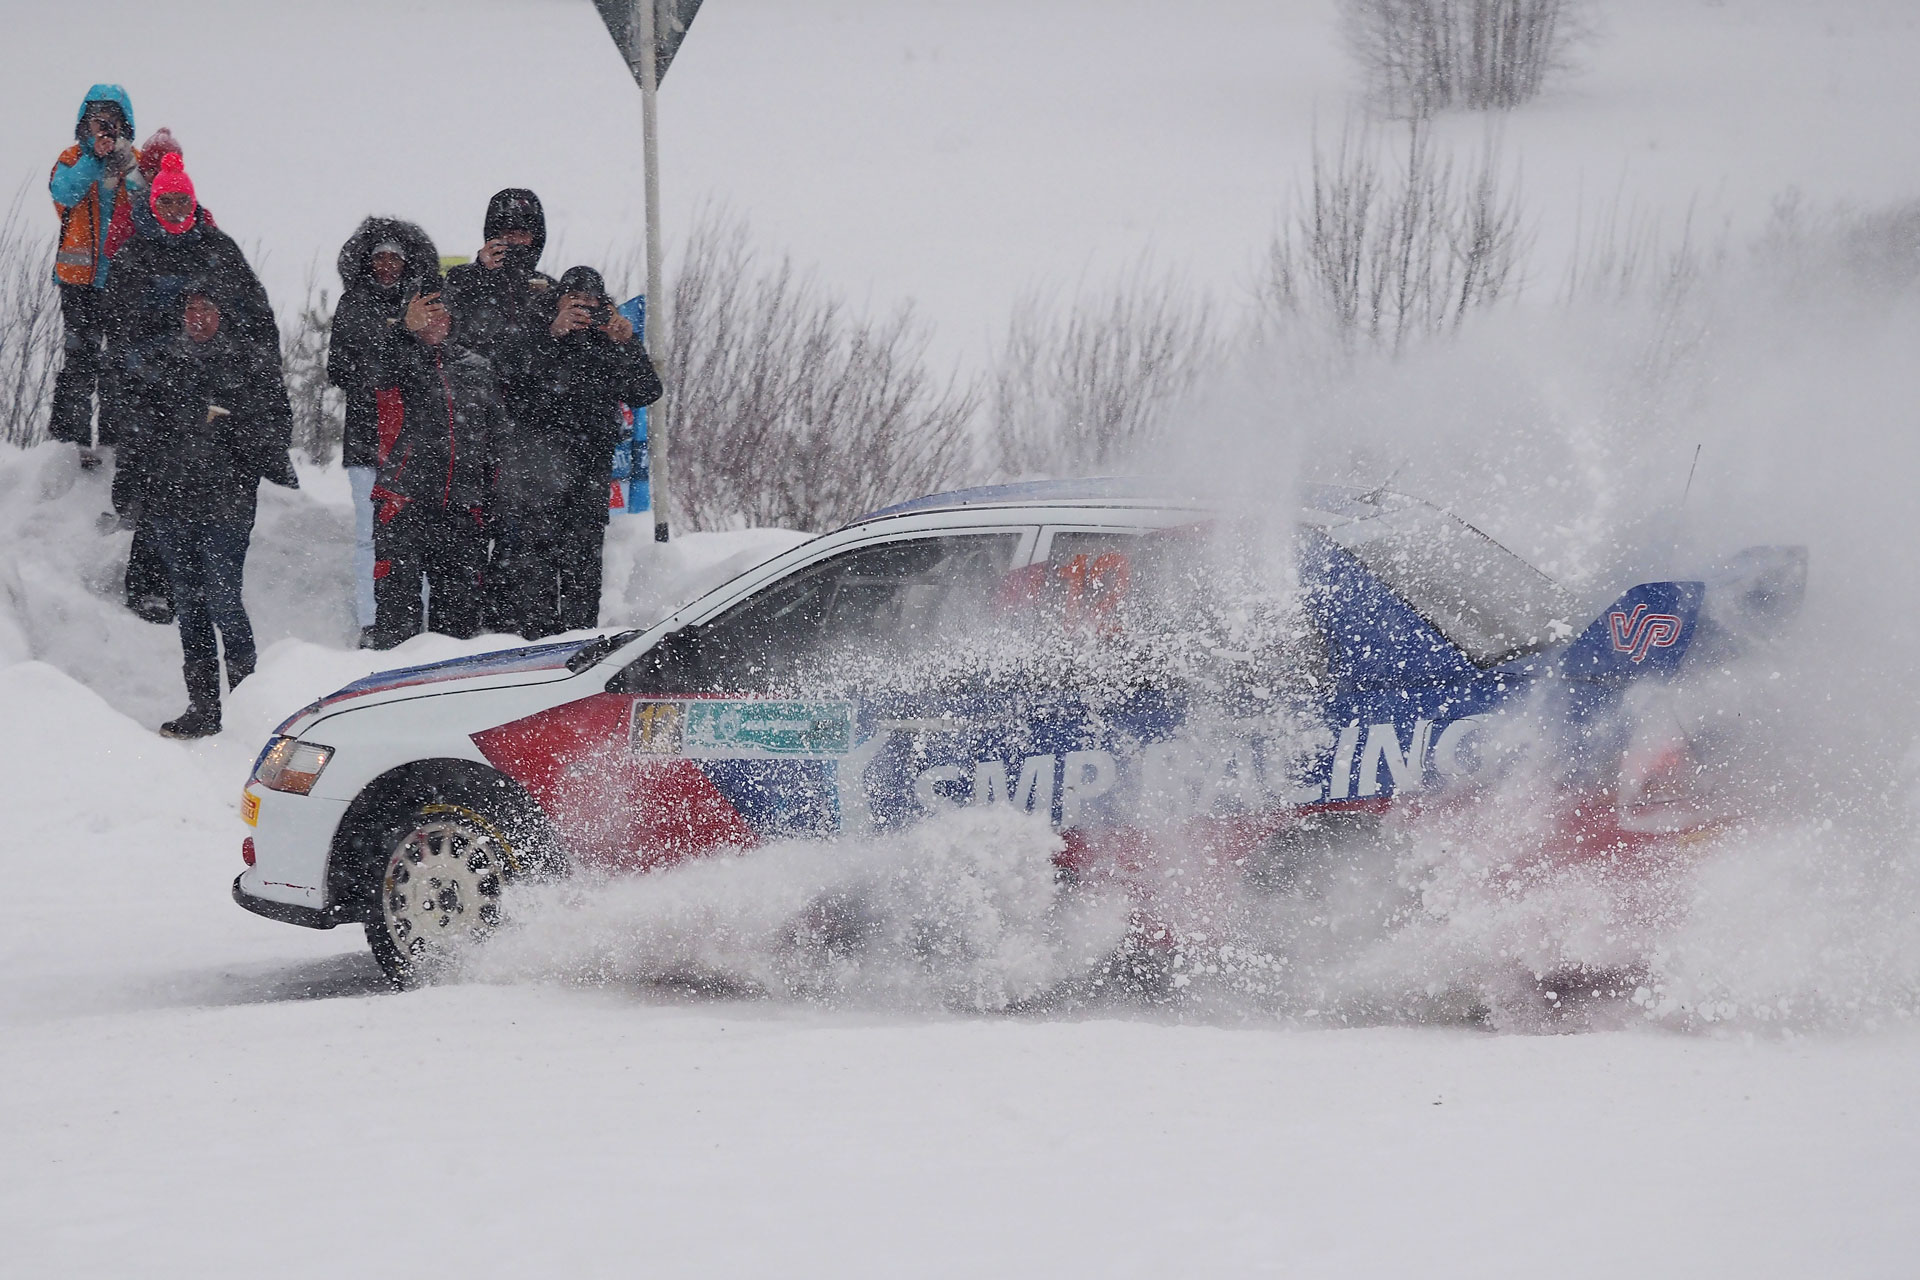 Vitaly Petrov. SMP Racing. Rally Karelia 2019. Day 2.